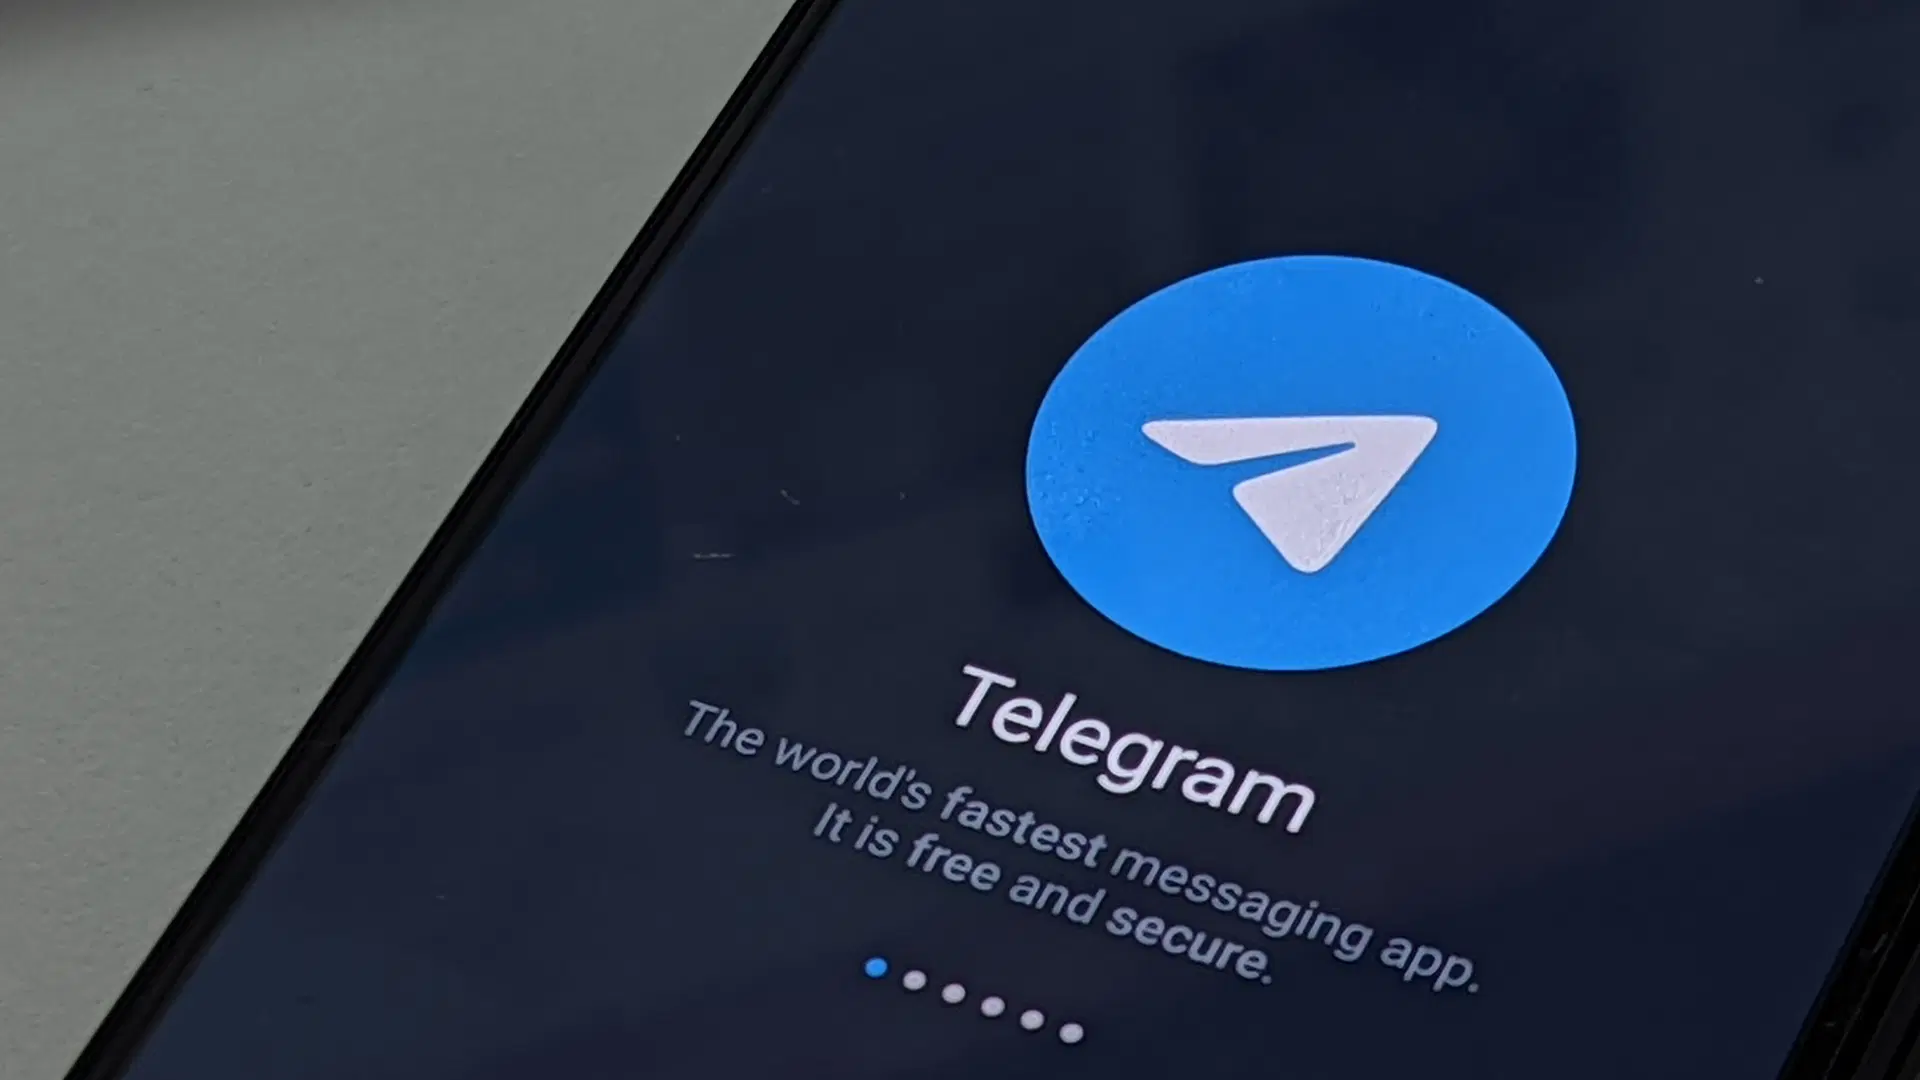 گوشی های Mi Xiaomi تلگرام را به عنوان برنامه مخرب معرفی می کند
